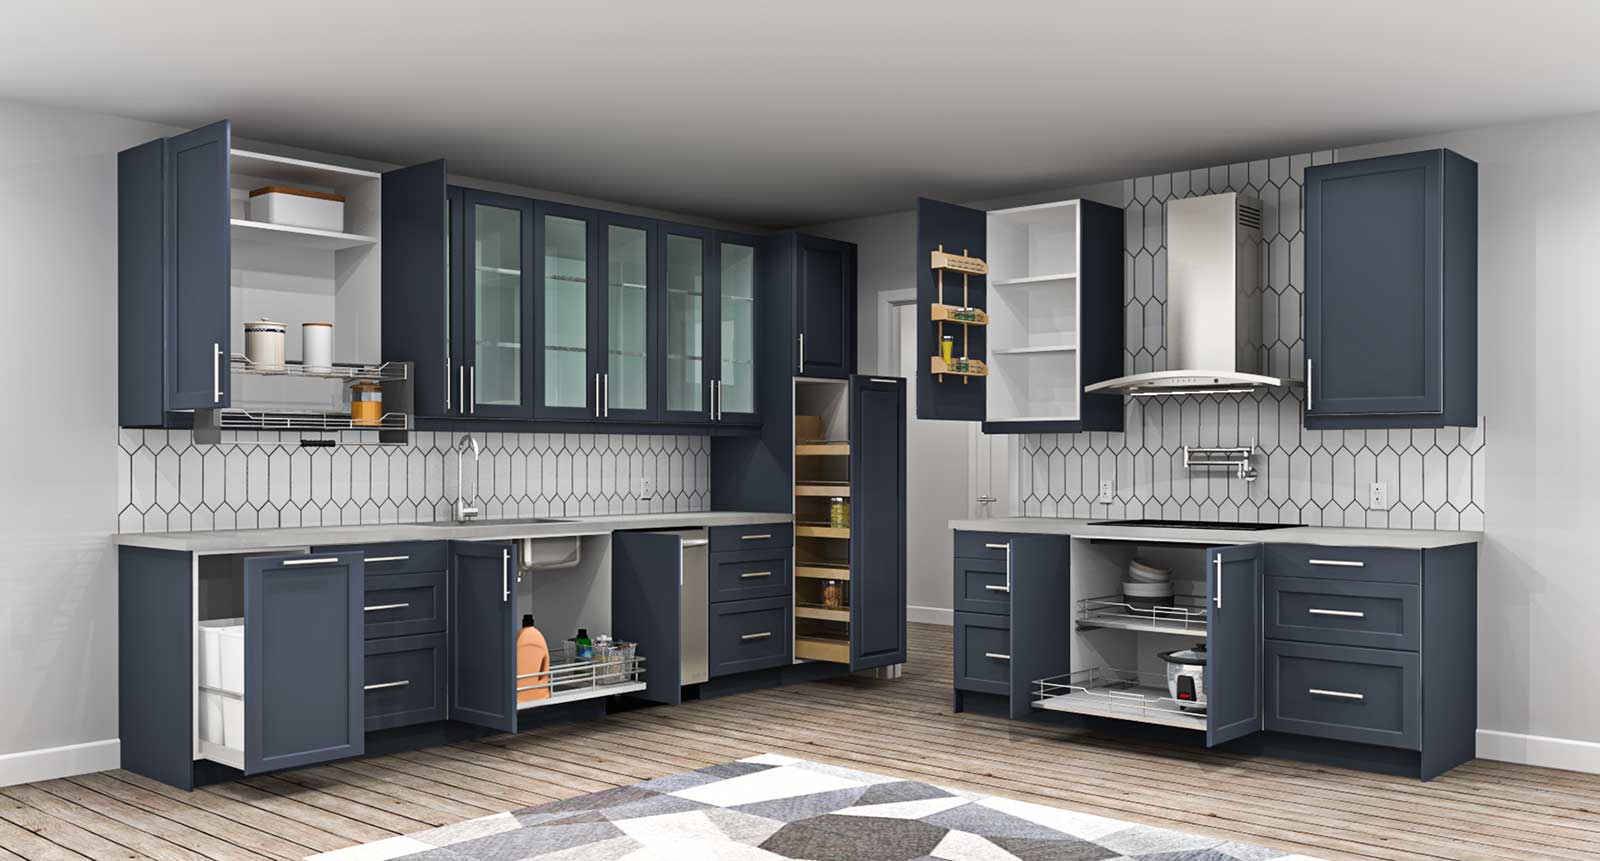 Under cabinet shelf, Kitchen design, Kitchen remodel